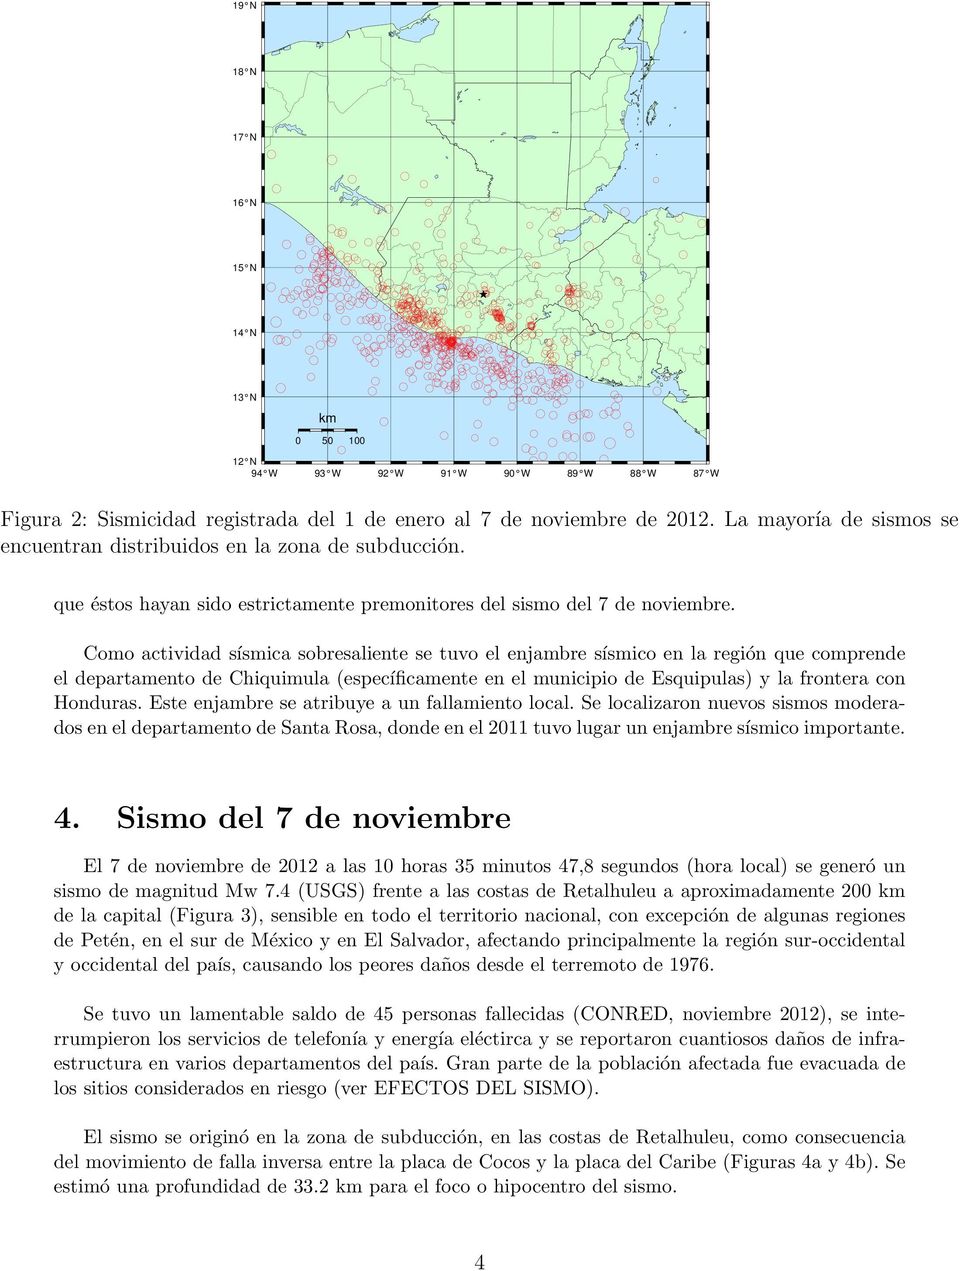 Como actividad sísmica sobresaliente se tuvo el enjambre sísmico en la región que comprende el departamento de Chiquimula (específicamente en el municipio de Esquipulas) y la frontera con Honduras.